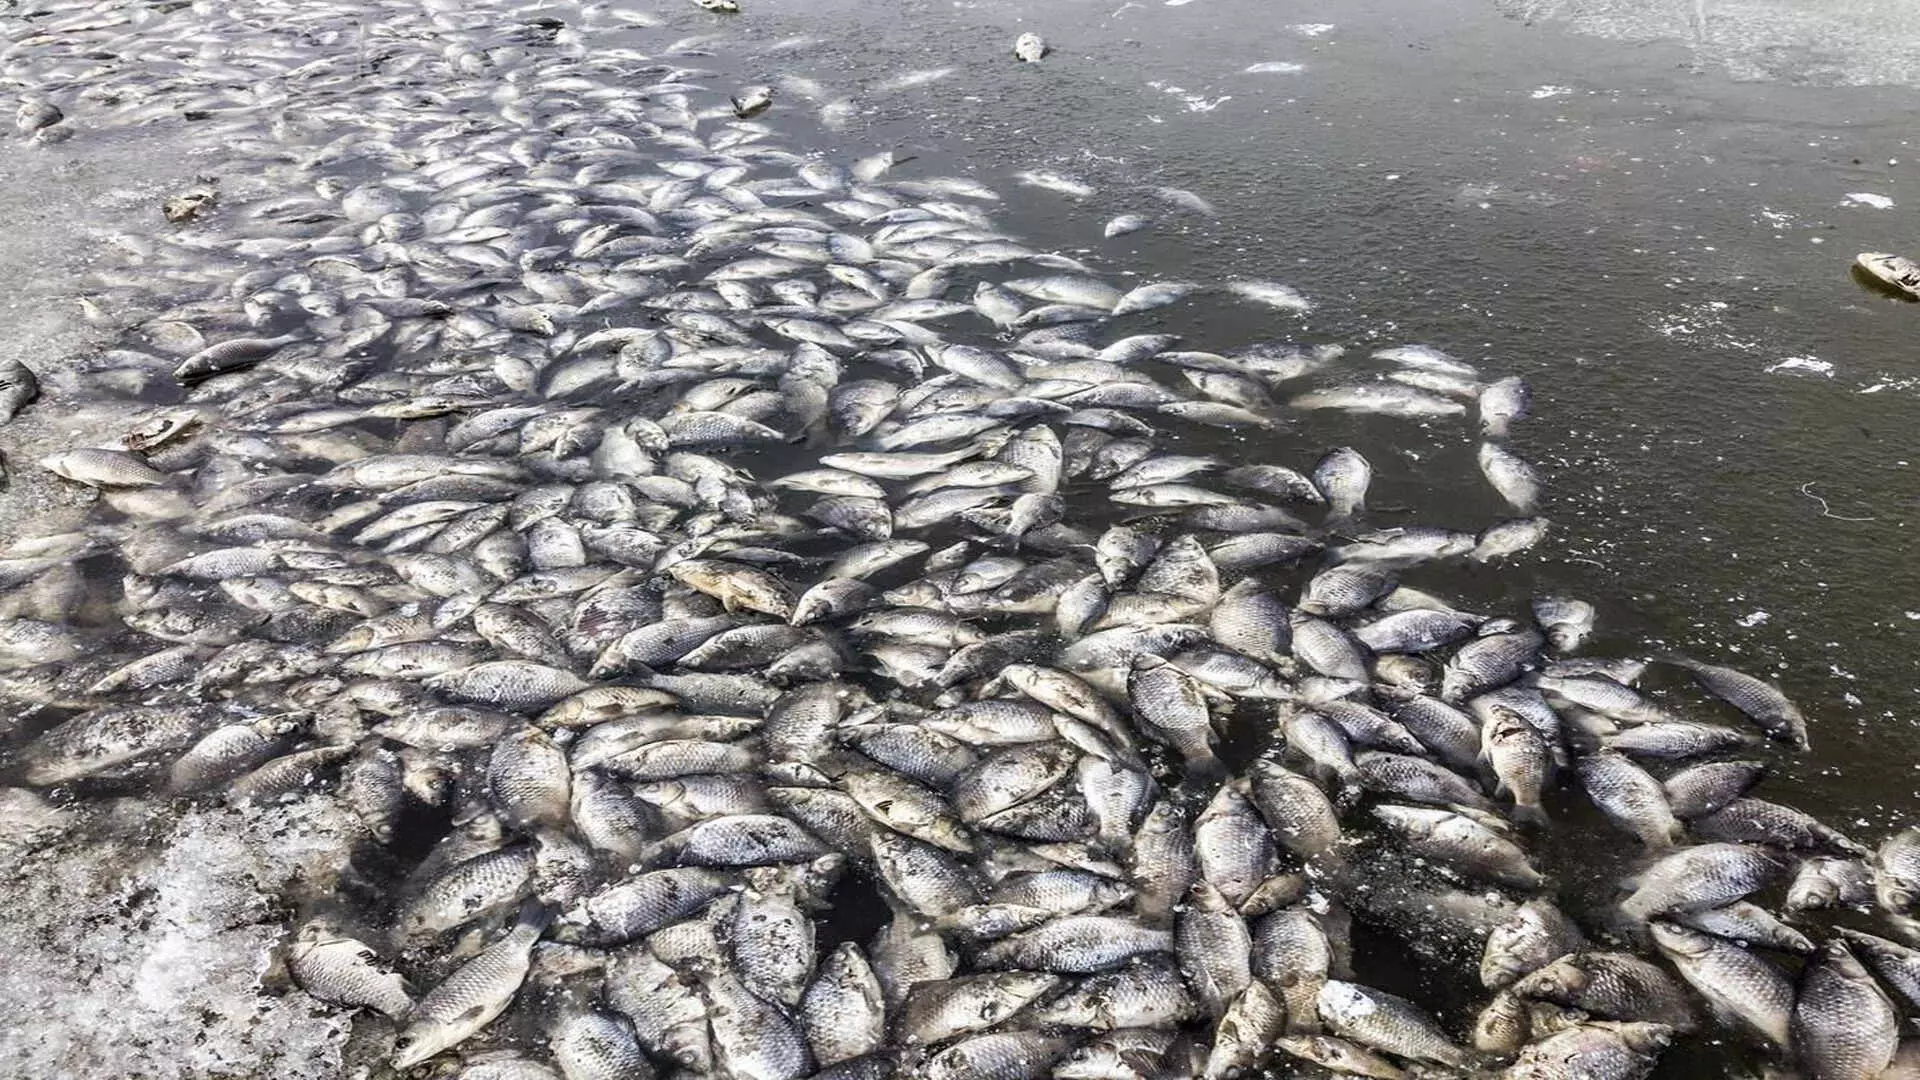 Industrial waste के डंपिंग के बाद ब्राज़ील की प्रमुख नदी में कई टन मृत मछलियाँ